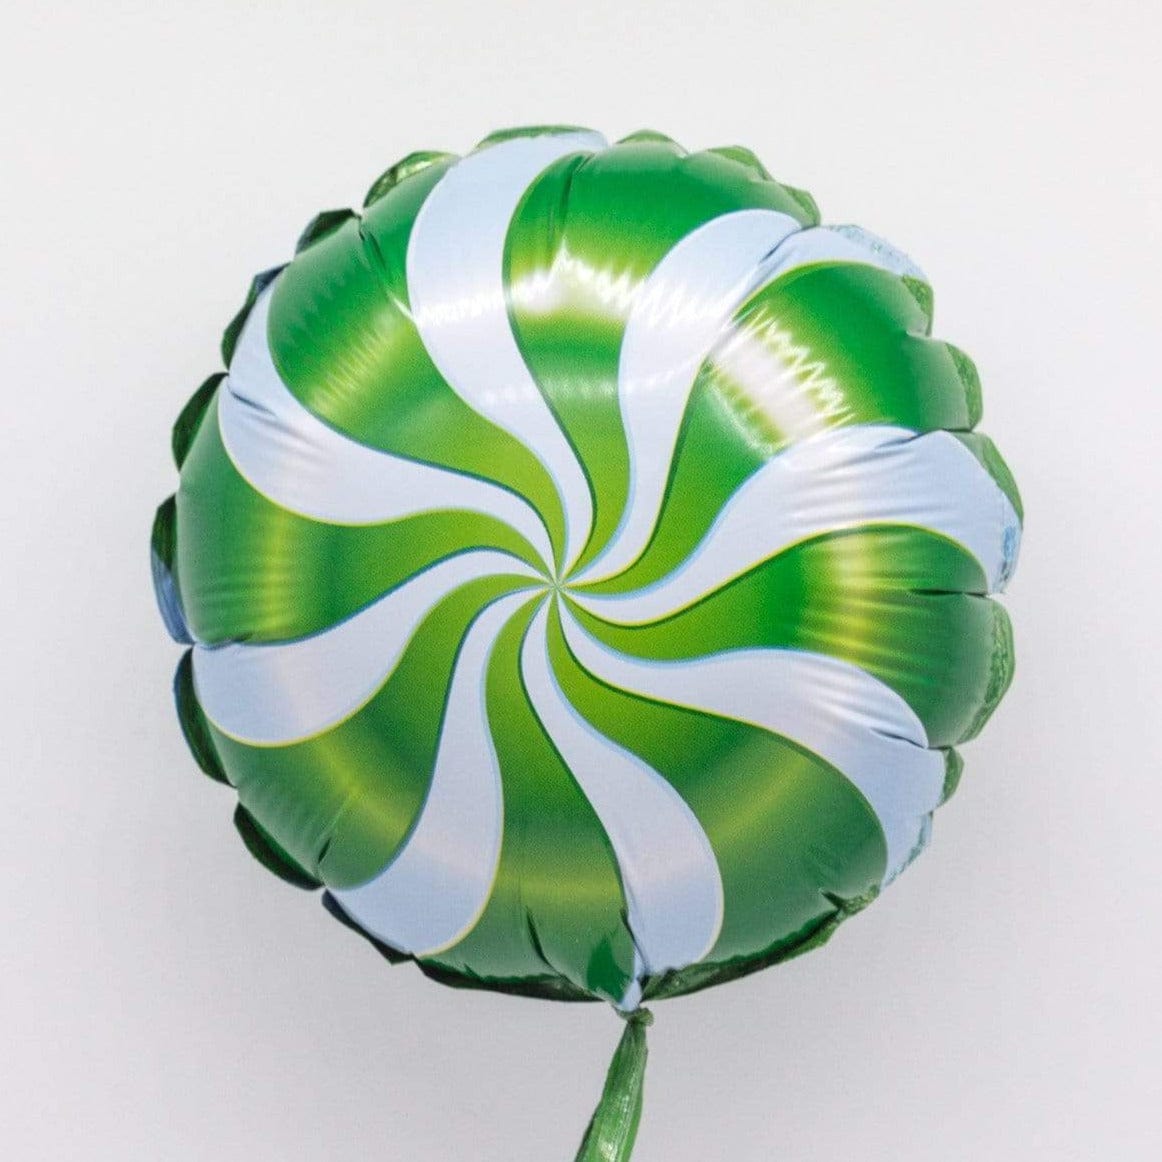 Candy Swirl Balloon | Lollipop Candy Balloon Blue | Online Balloonery Qualatex